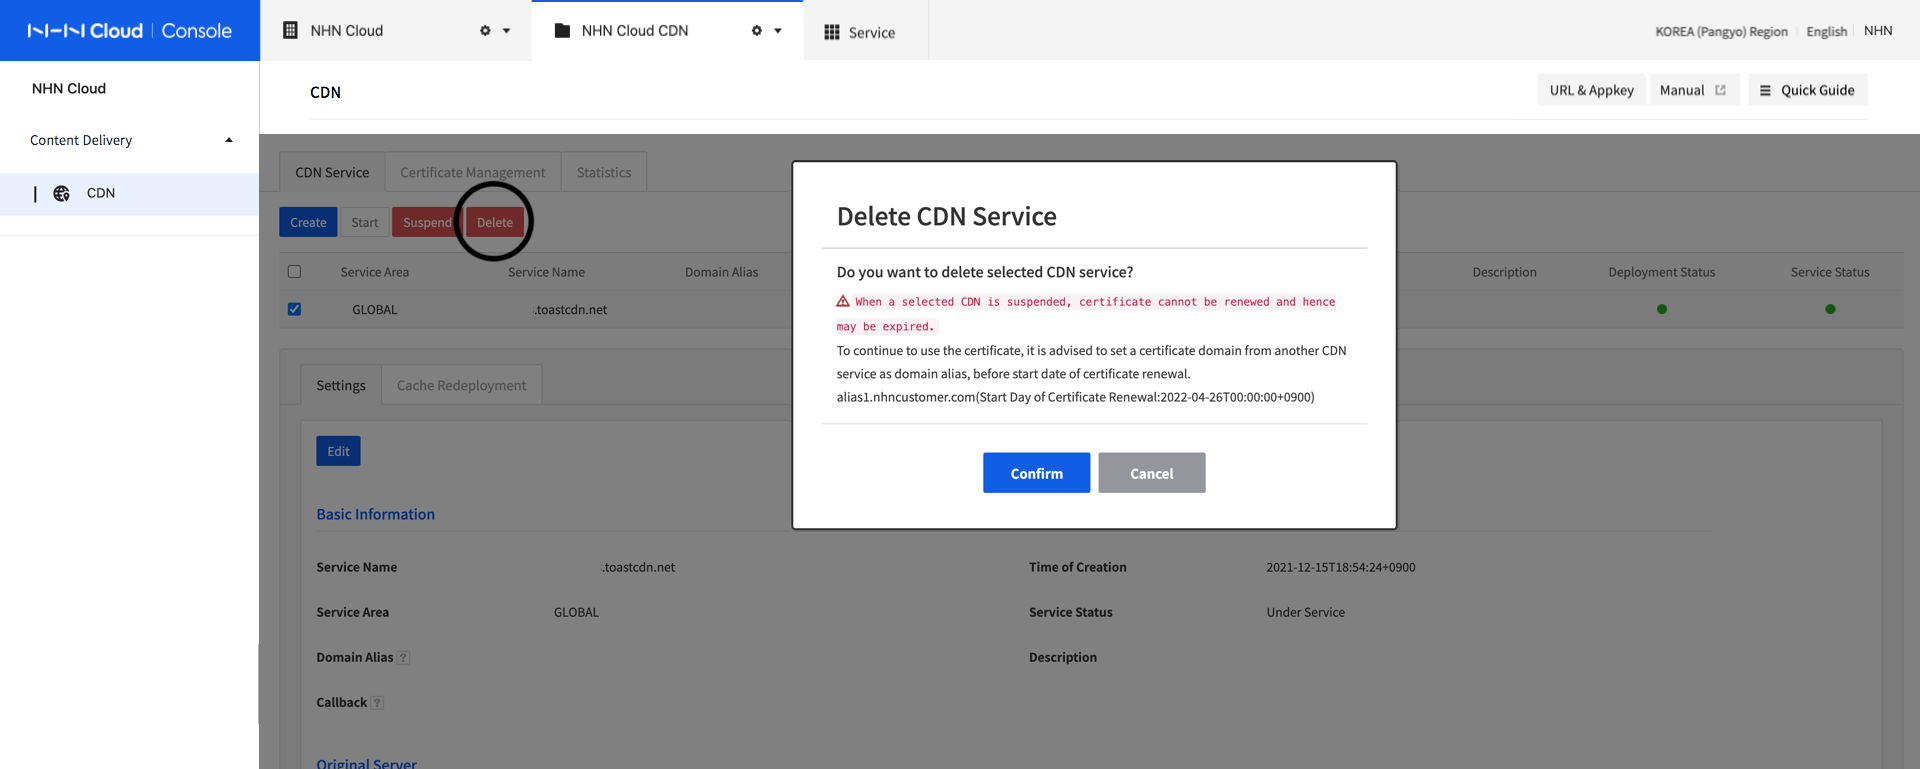 CDN Service-Delete